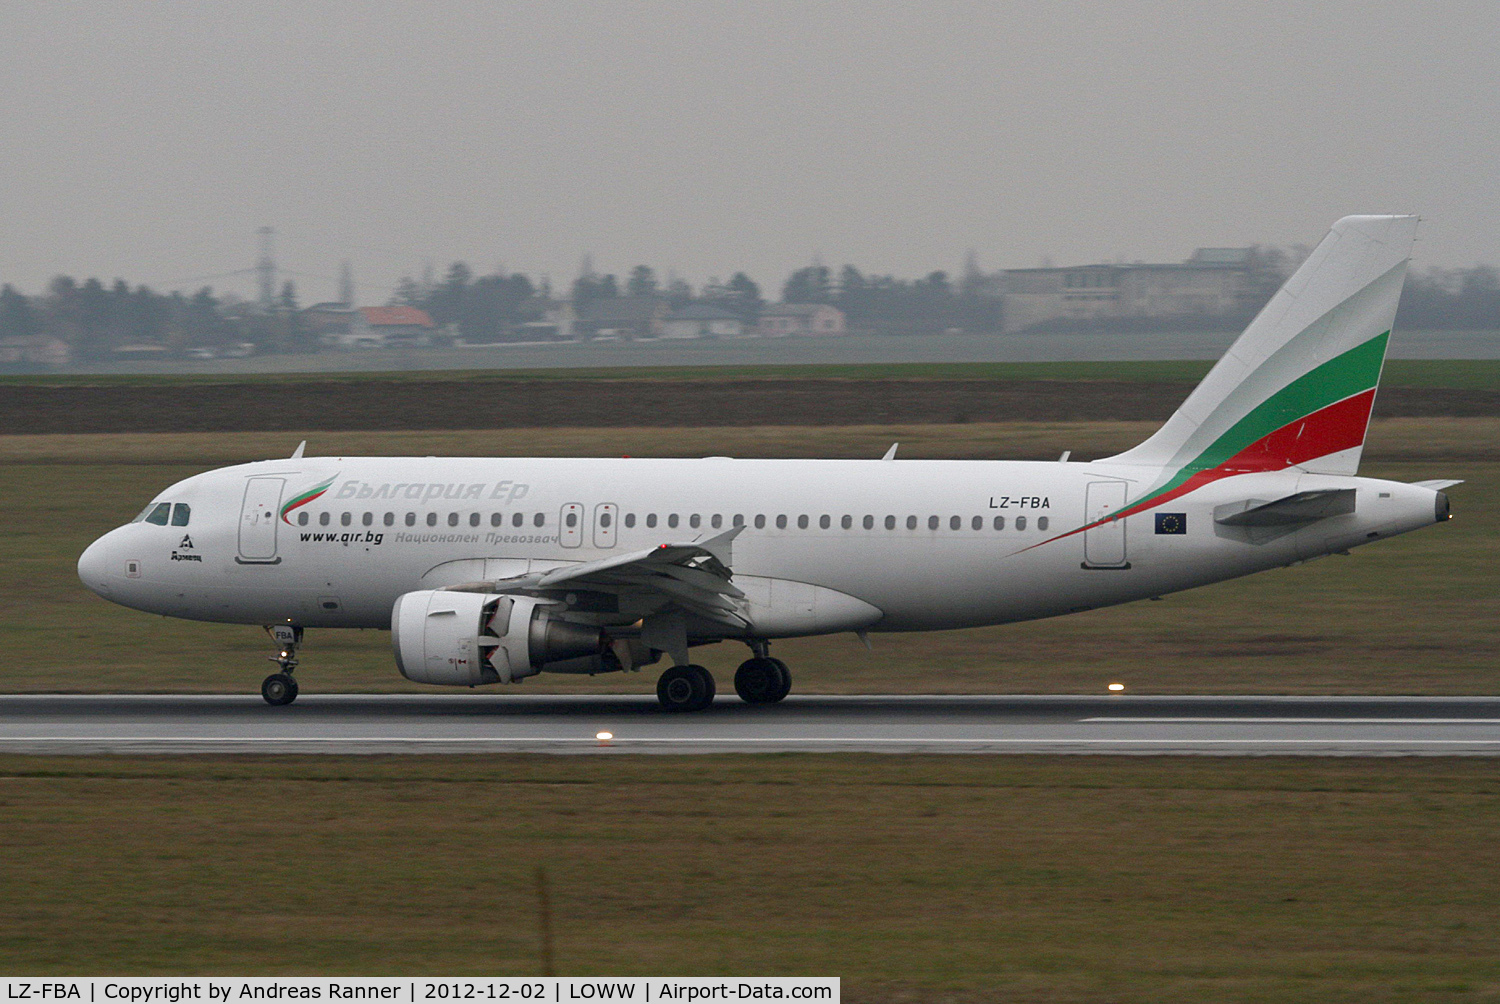 LZ-FBA, 2008 Airbus A319-112 C/N 3564, Bulgaria Air Airbus A319